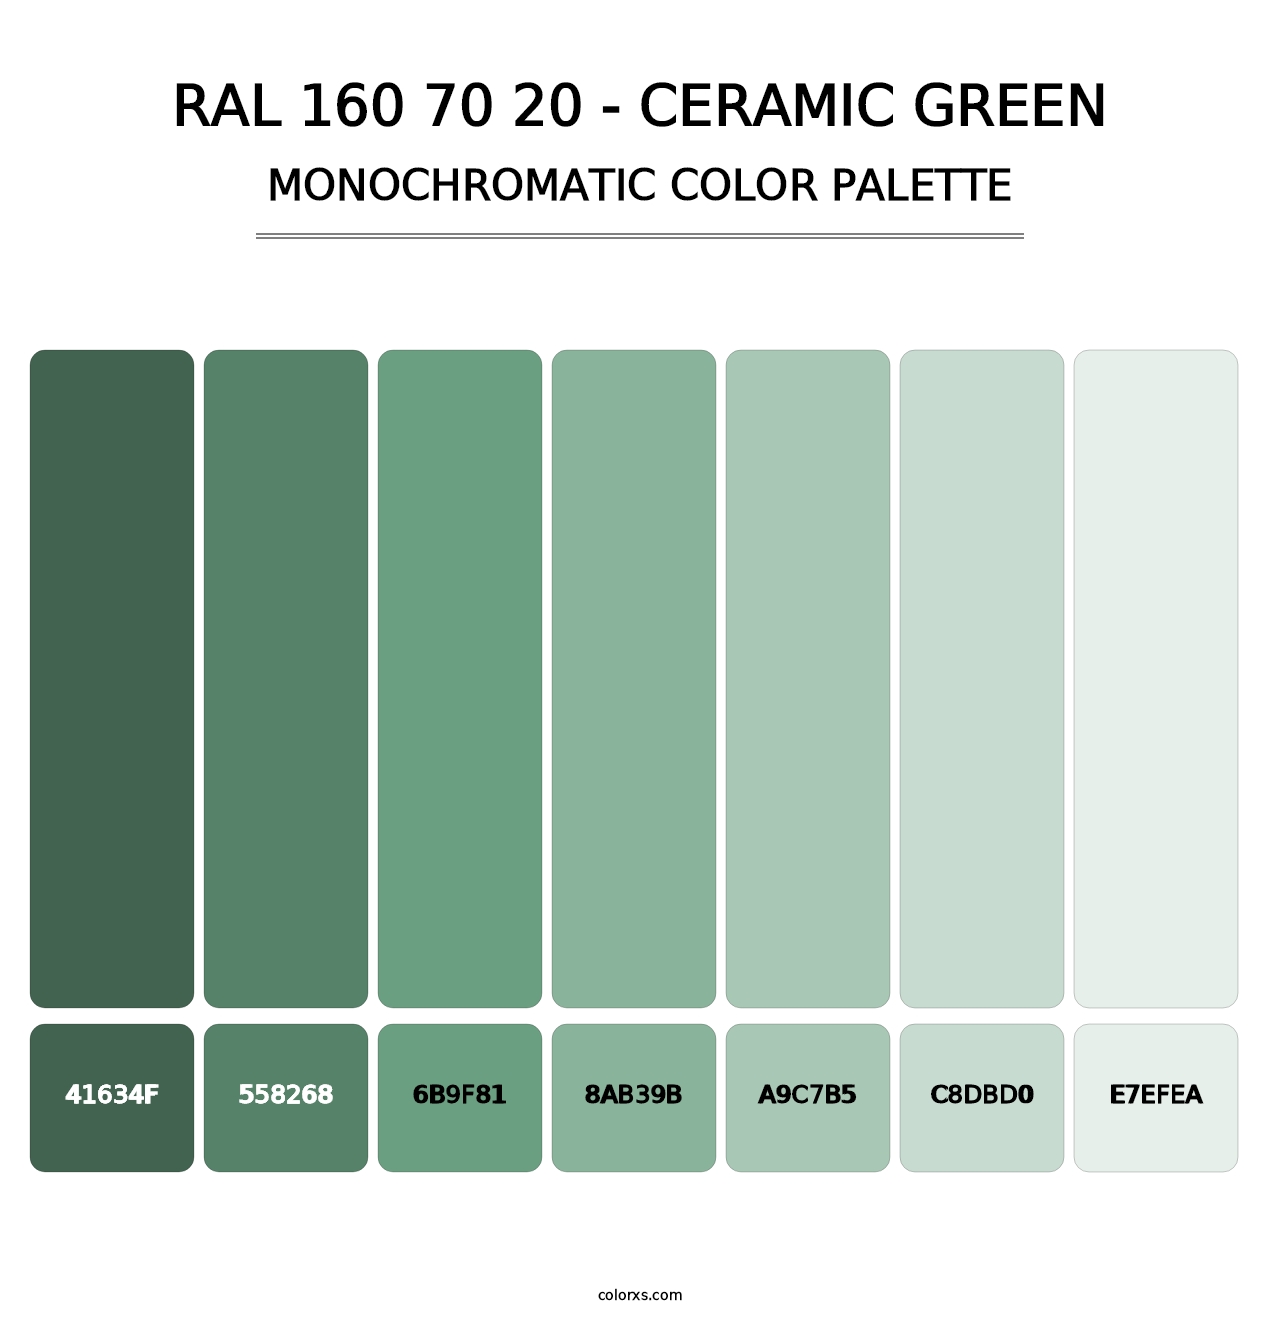 RAL 160 70 20 - Ceramic Green - Monochromatic Color Palette